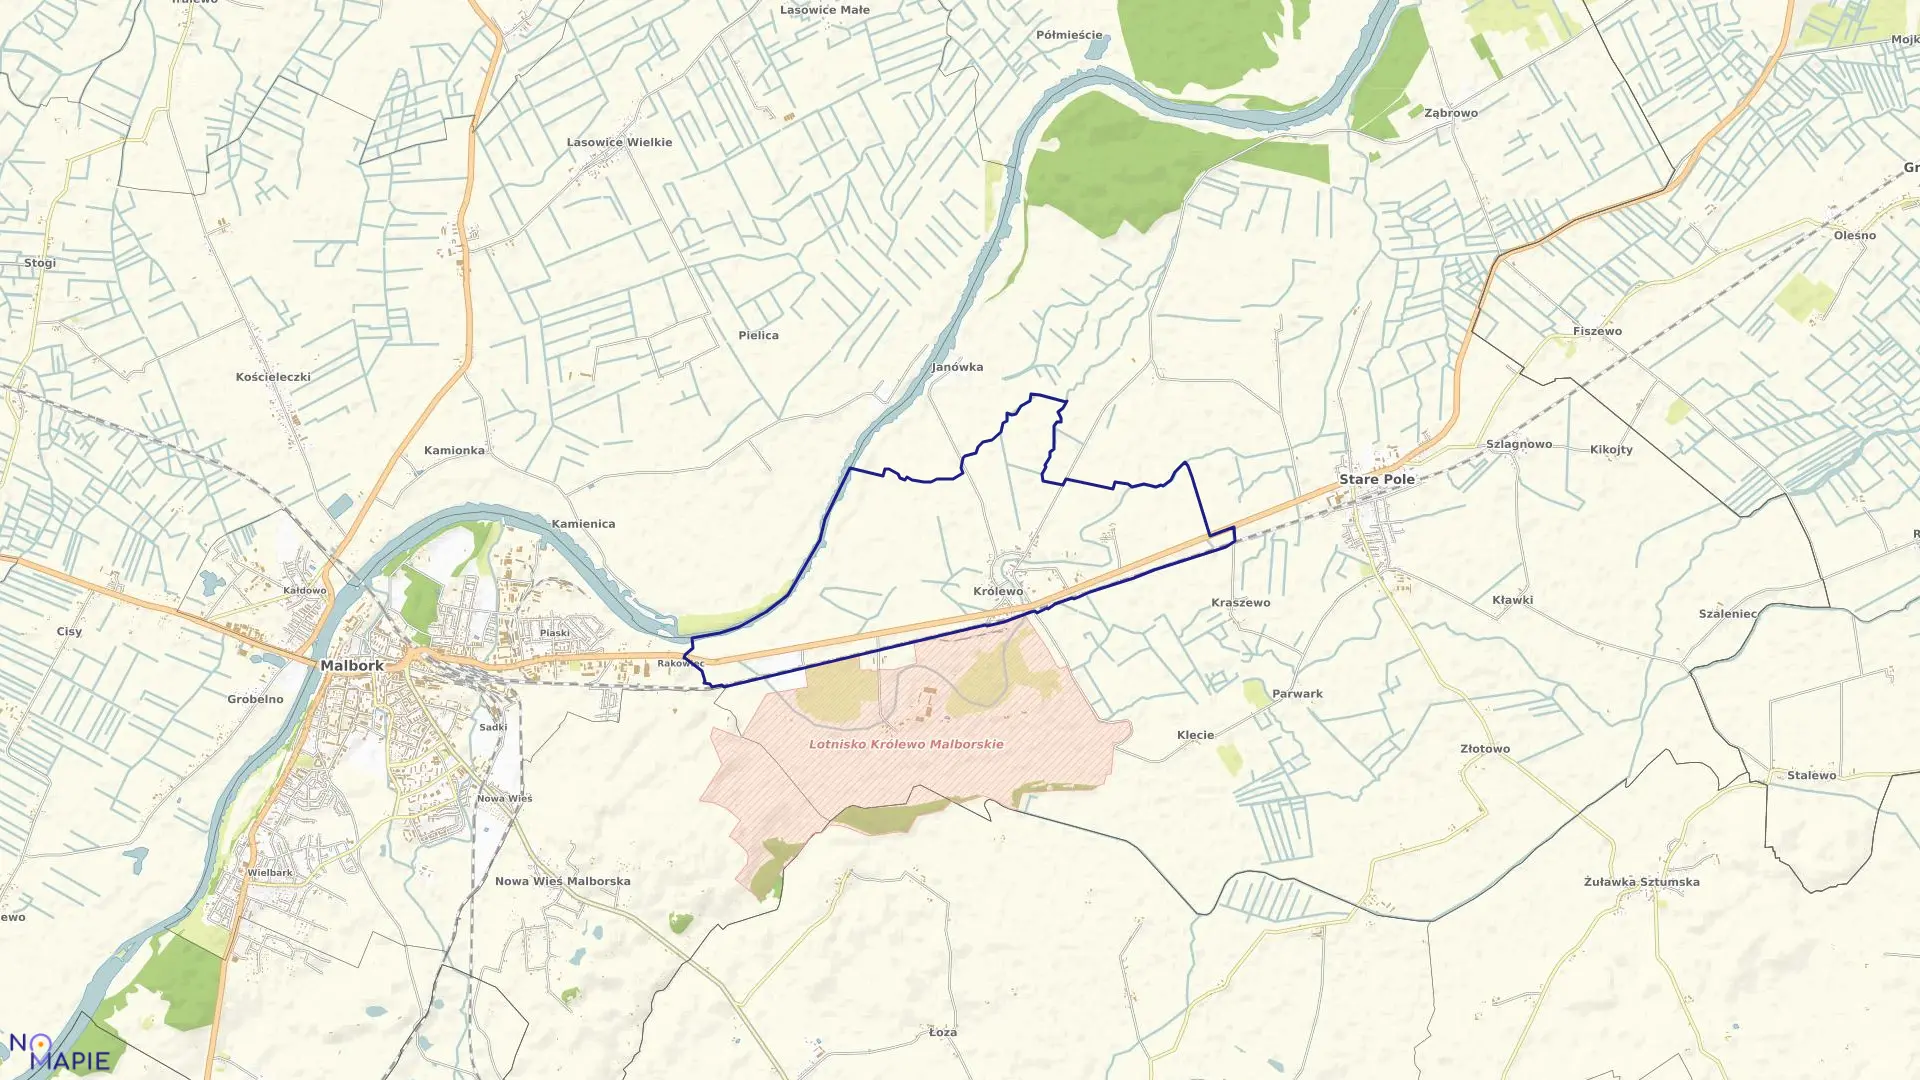 Mapa obrębu Królewo w gminie Stare Pole